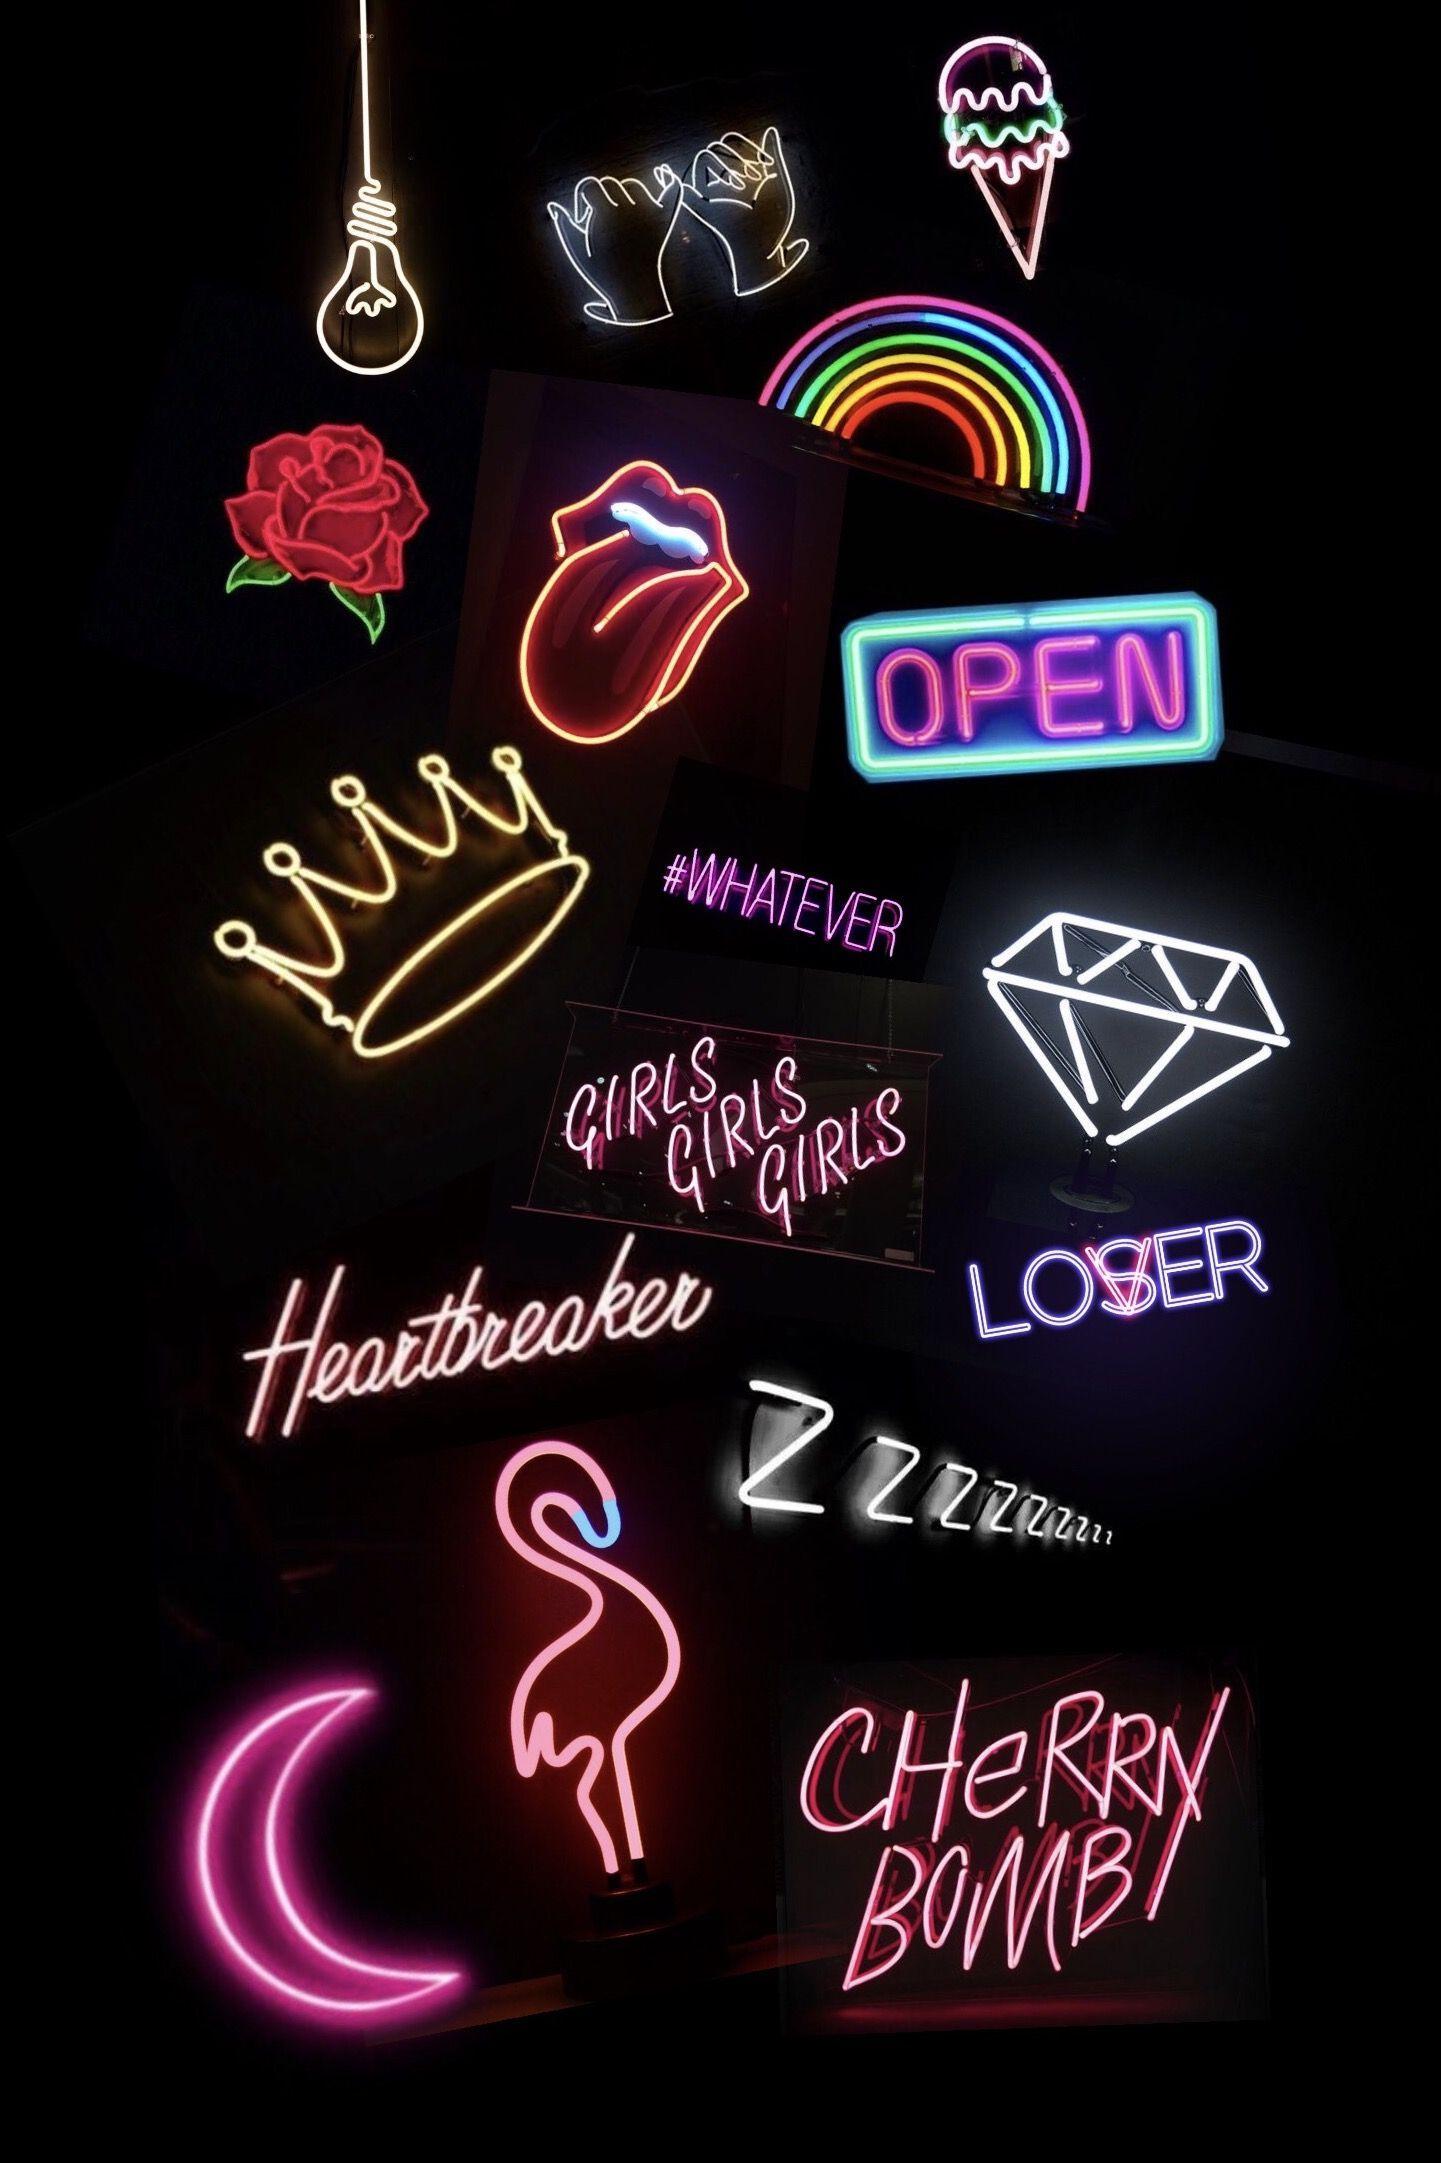 Aesthetic Neon Lock Screen Wallpaperwalpaperlist.com